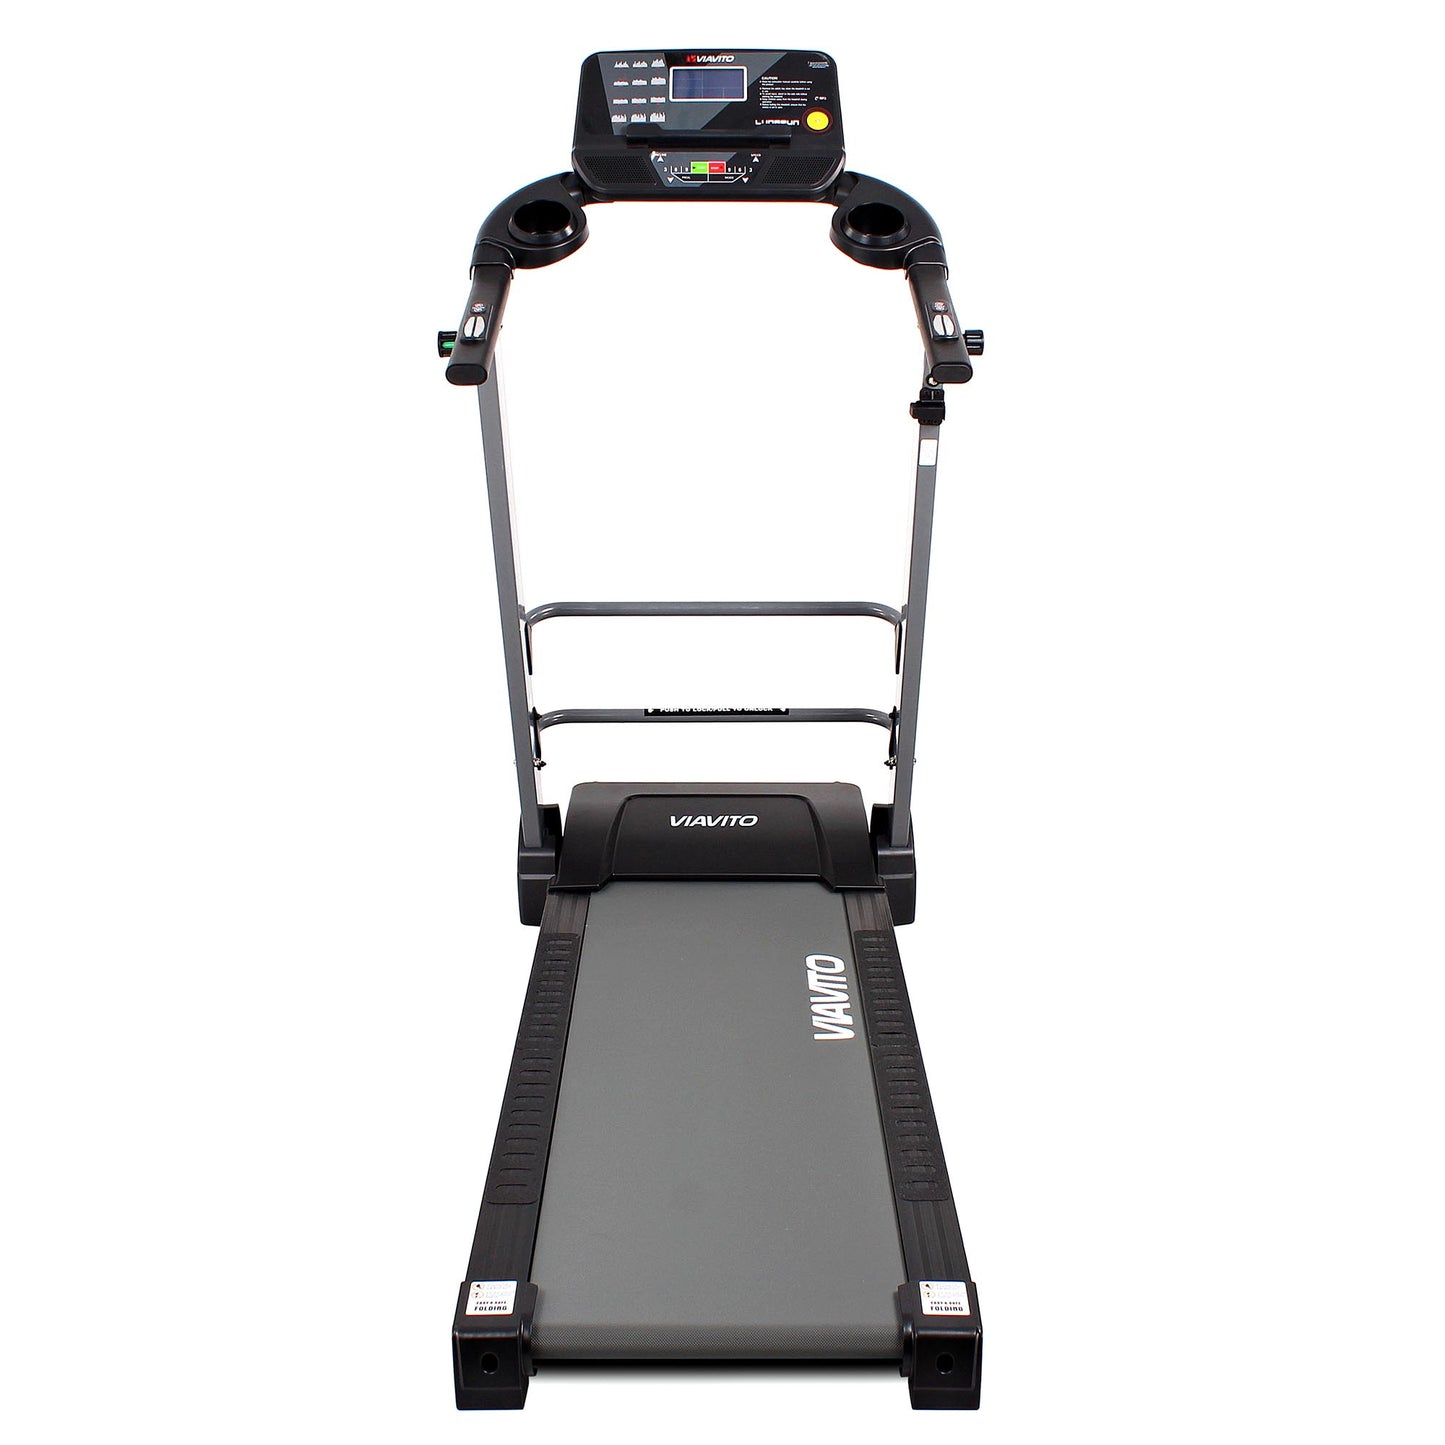 |Viavito LunaRun Treadmill - Front|